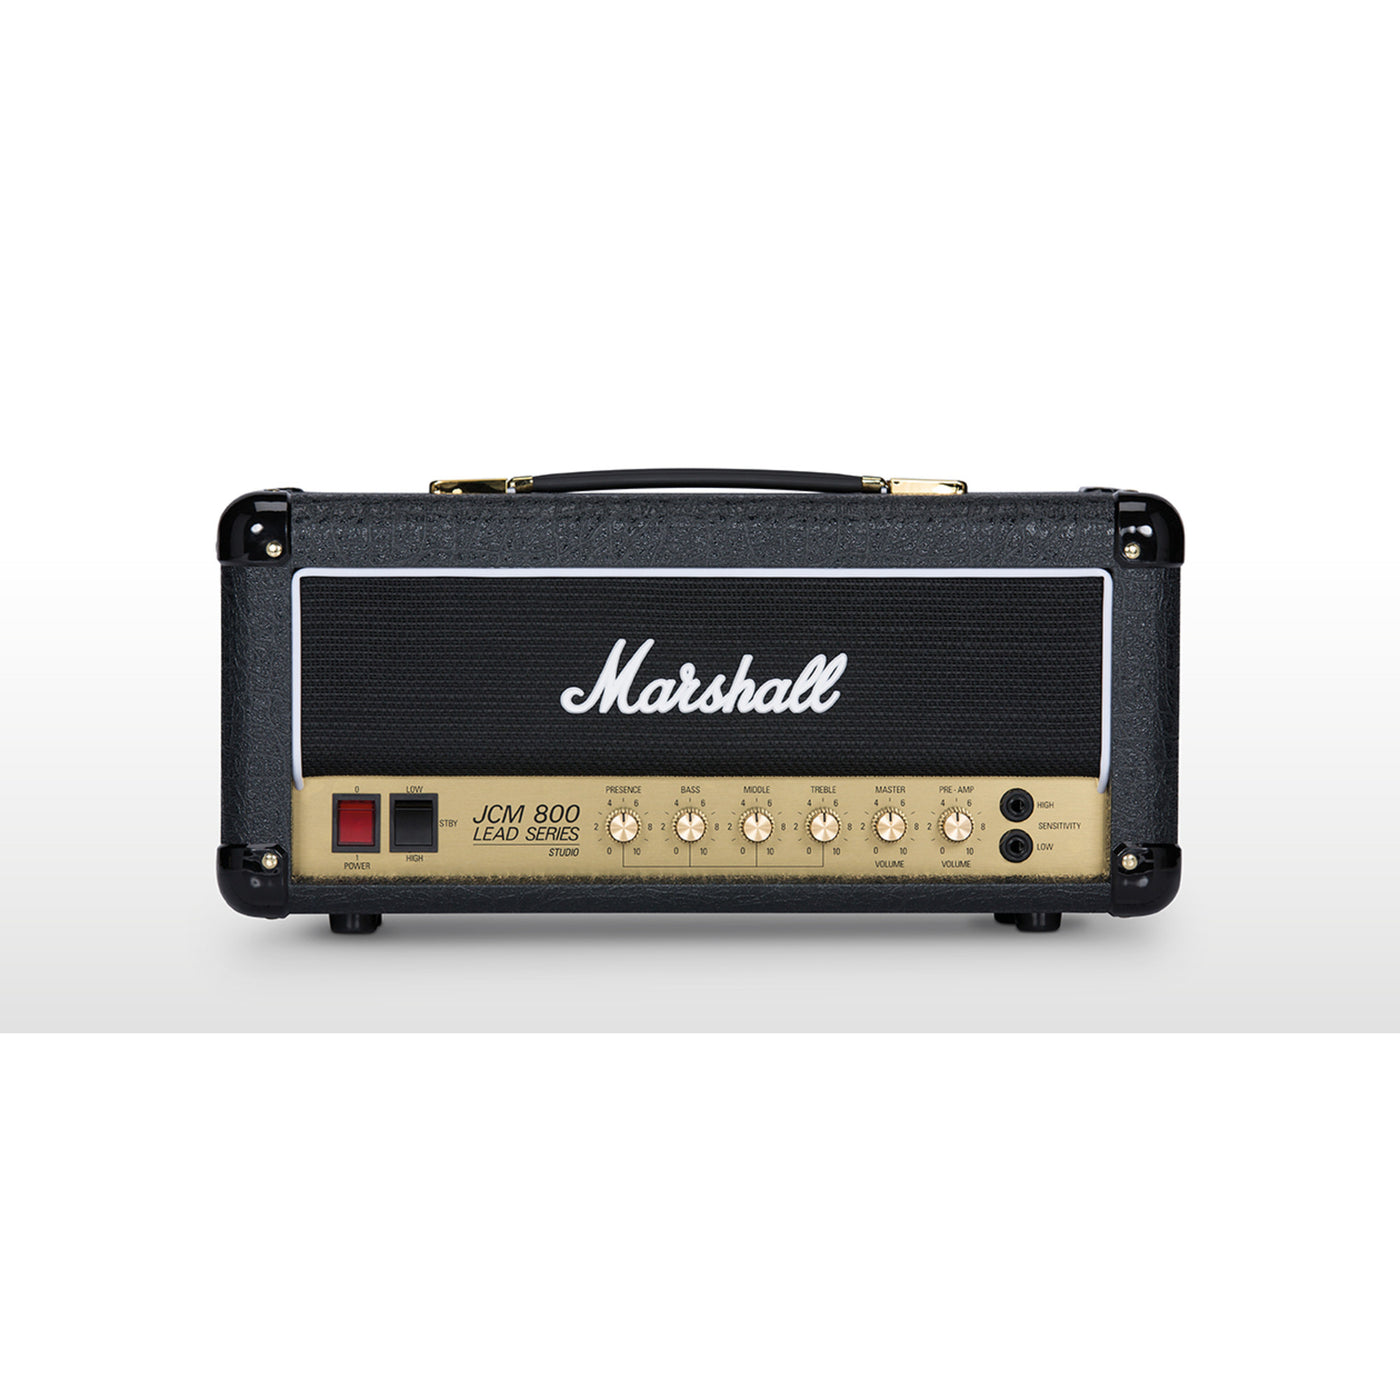 Marshall Studio Classic 20-Watt Guitar Amp Head